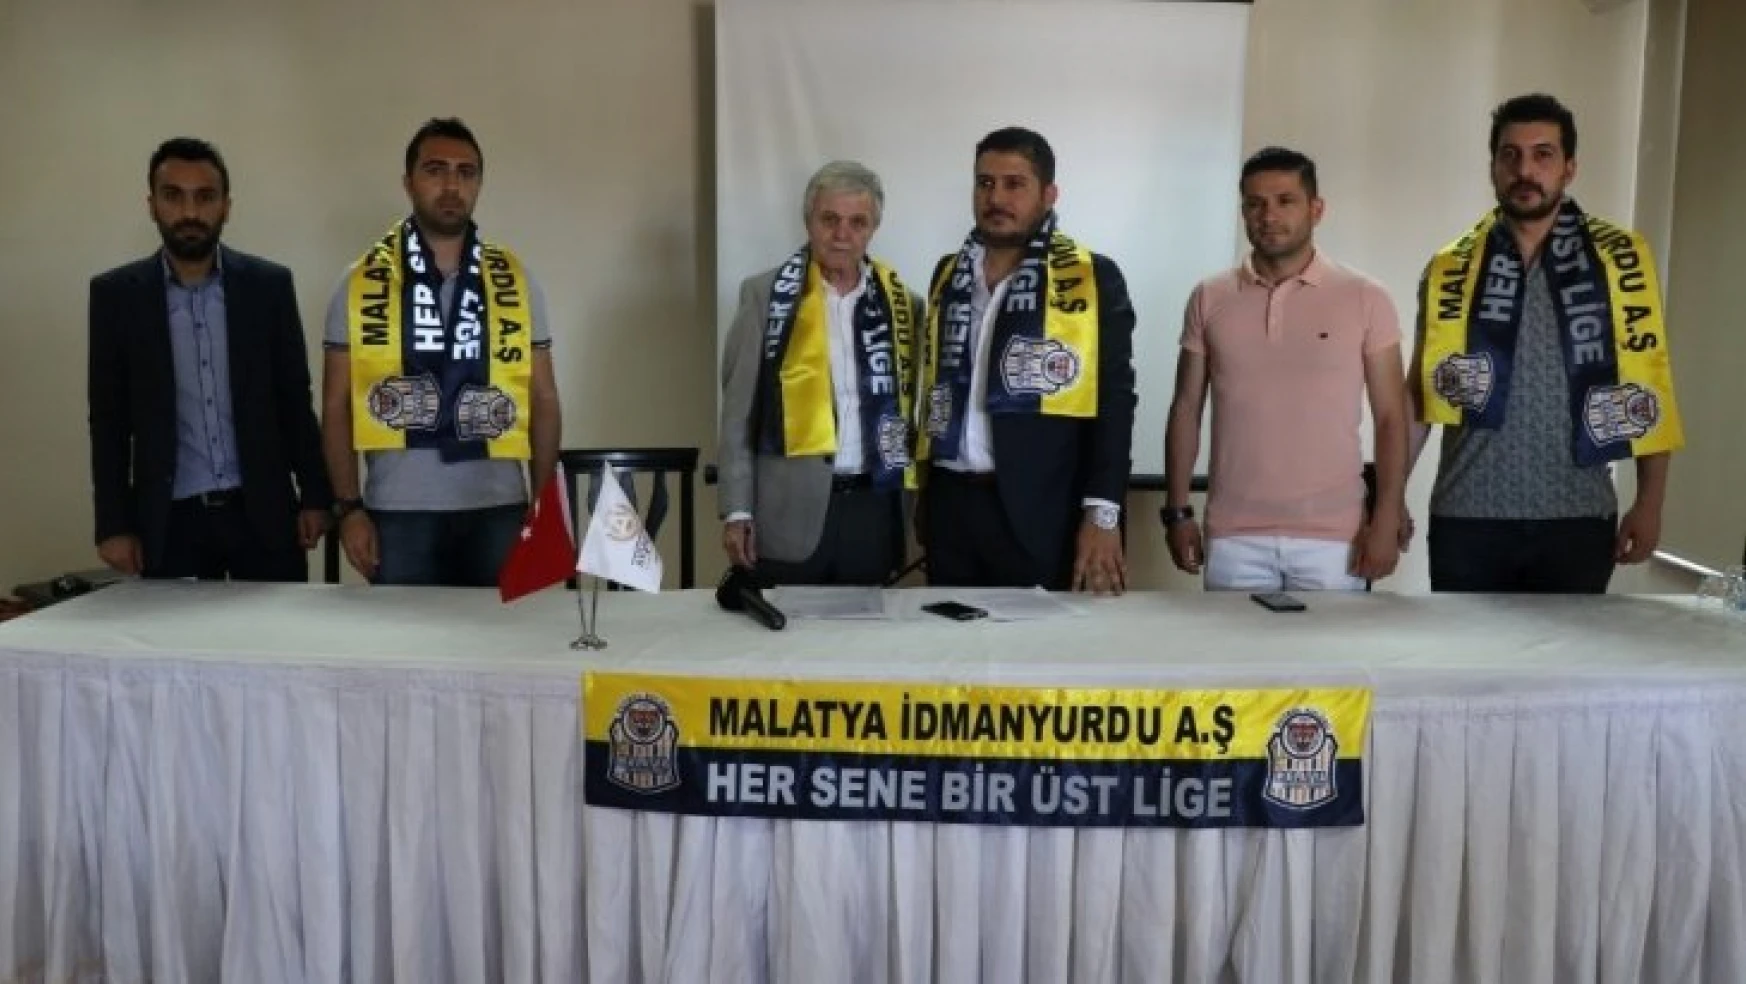 Malatya İdmanyurdu Kulübü, TÜFAD'ın açıklamasına tepki olarak faaliyetlerini durdurdu